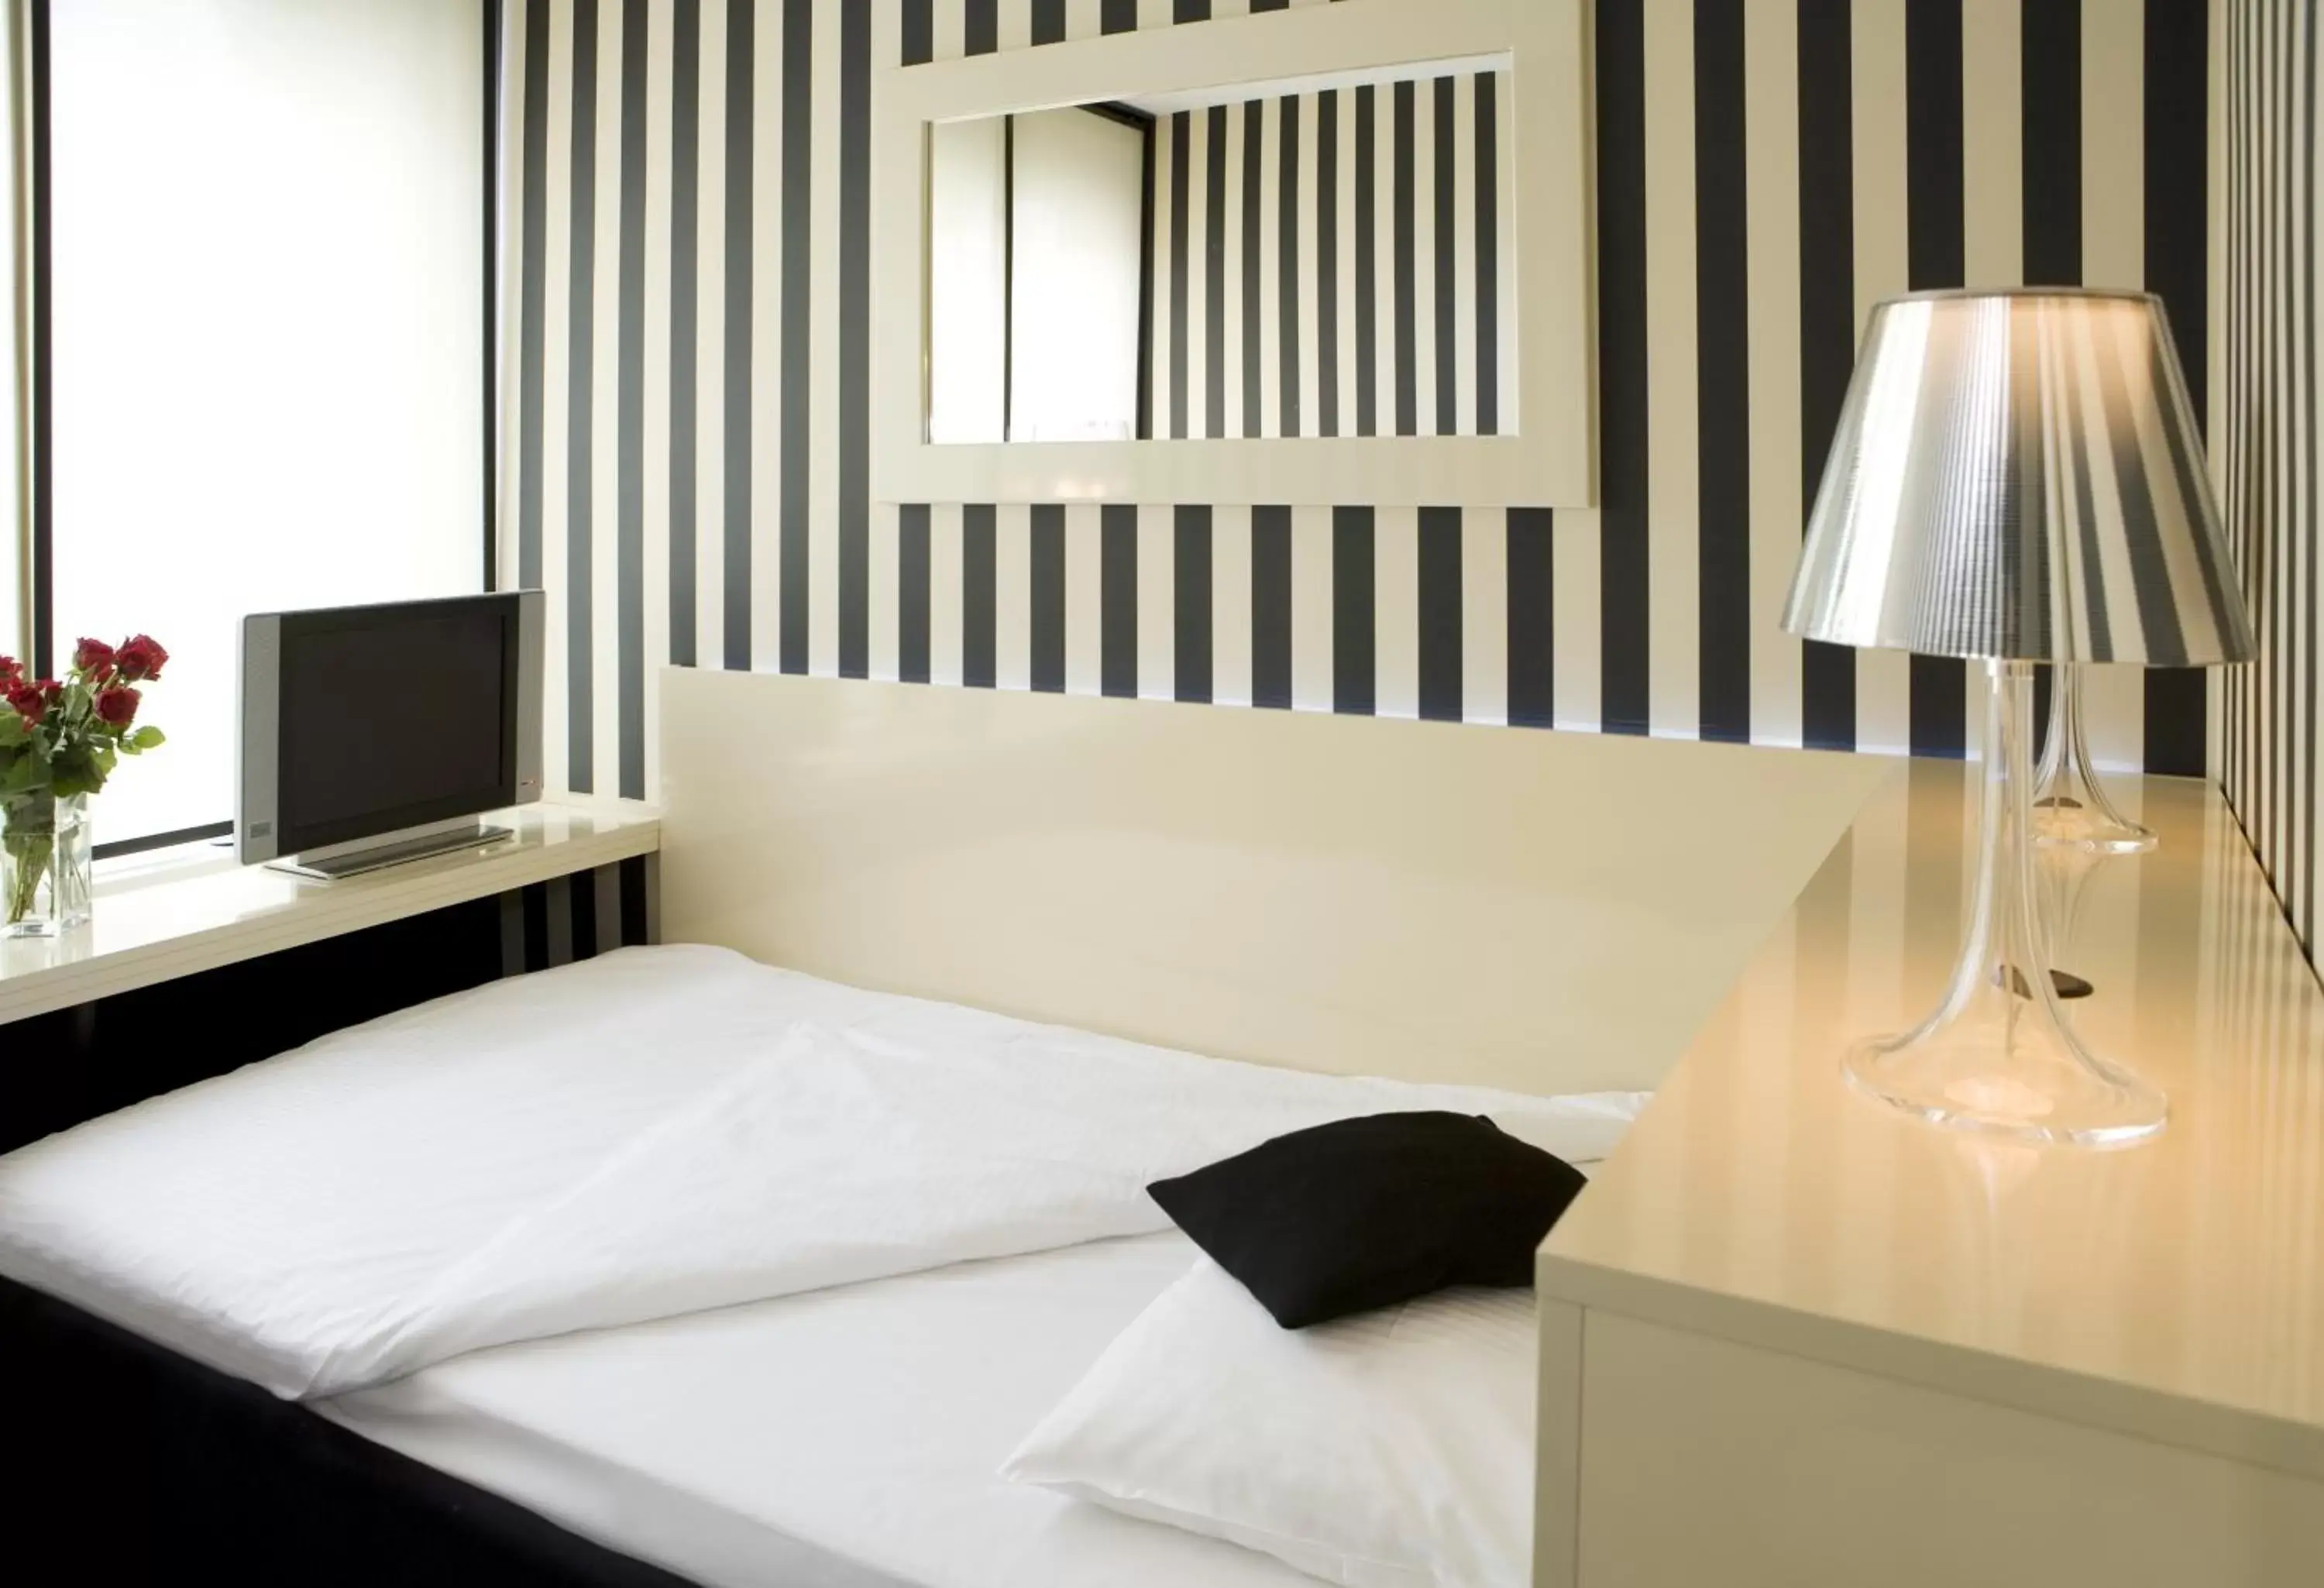 Single Room in Relexa Hotel Bellevue an der Alster